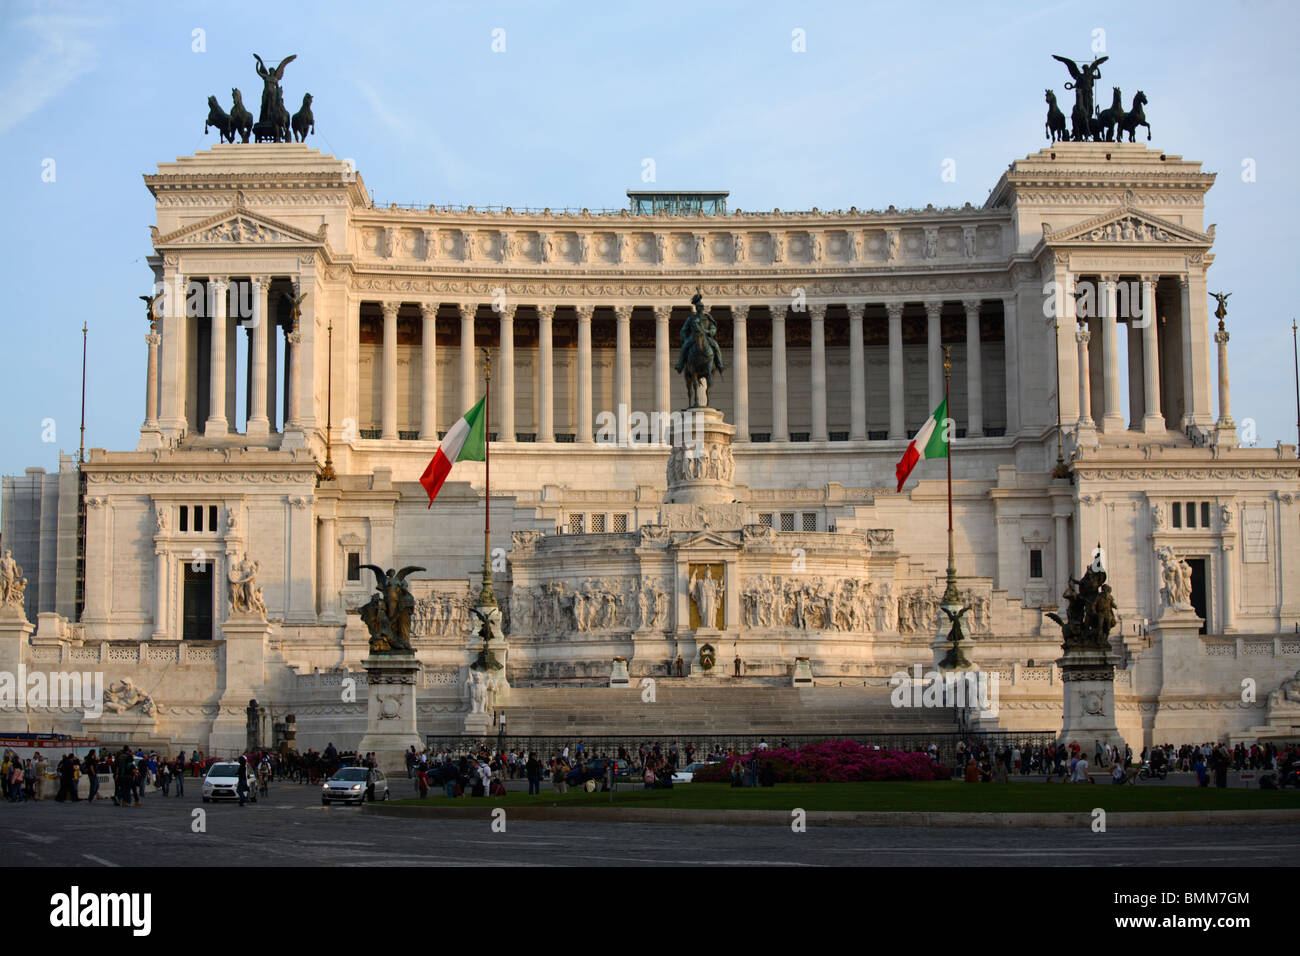 L'autel de la patrie ou Vittoriano, Rome, Italie Banque D'Images